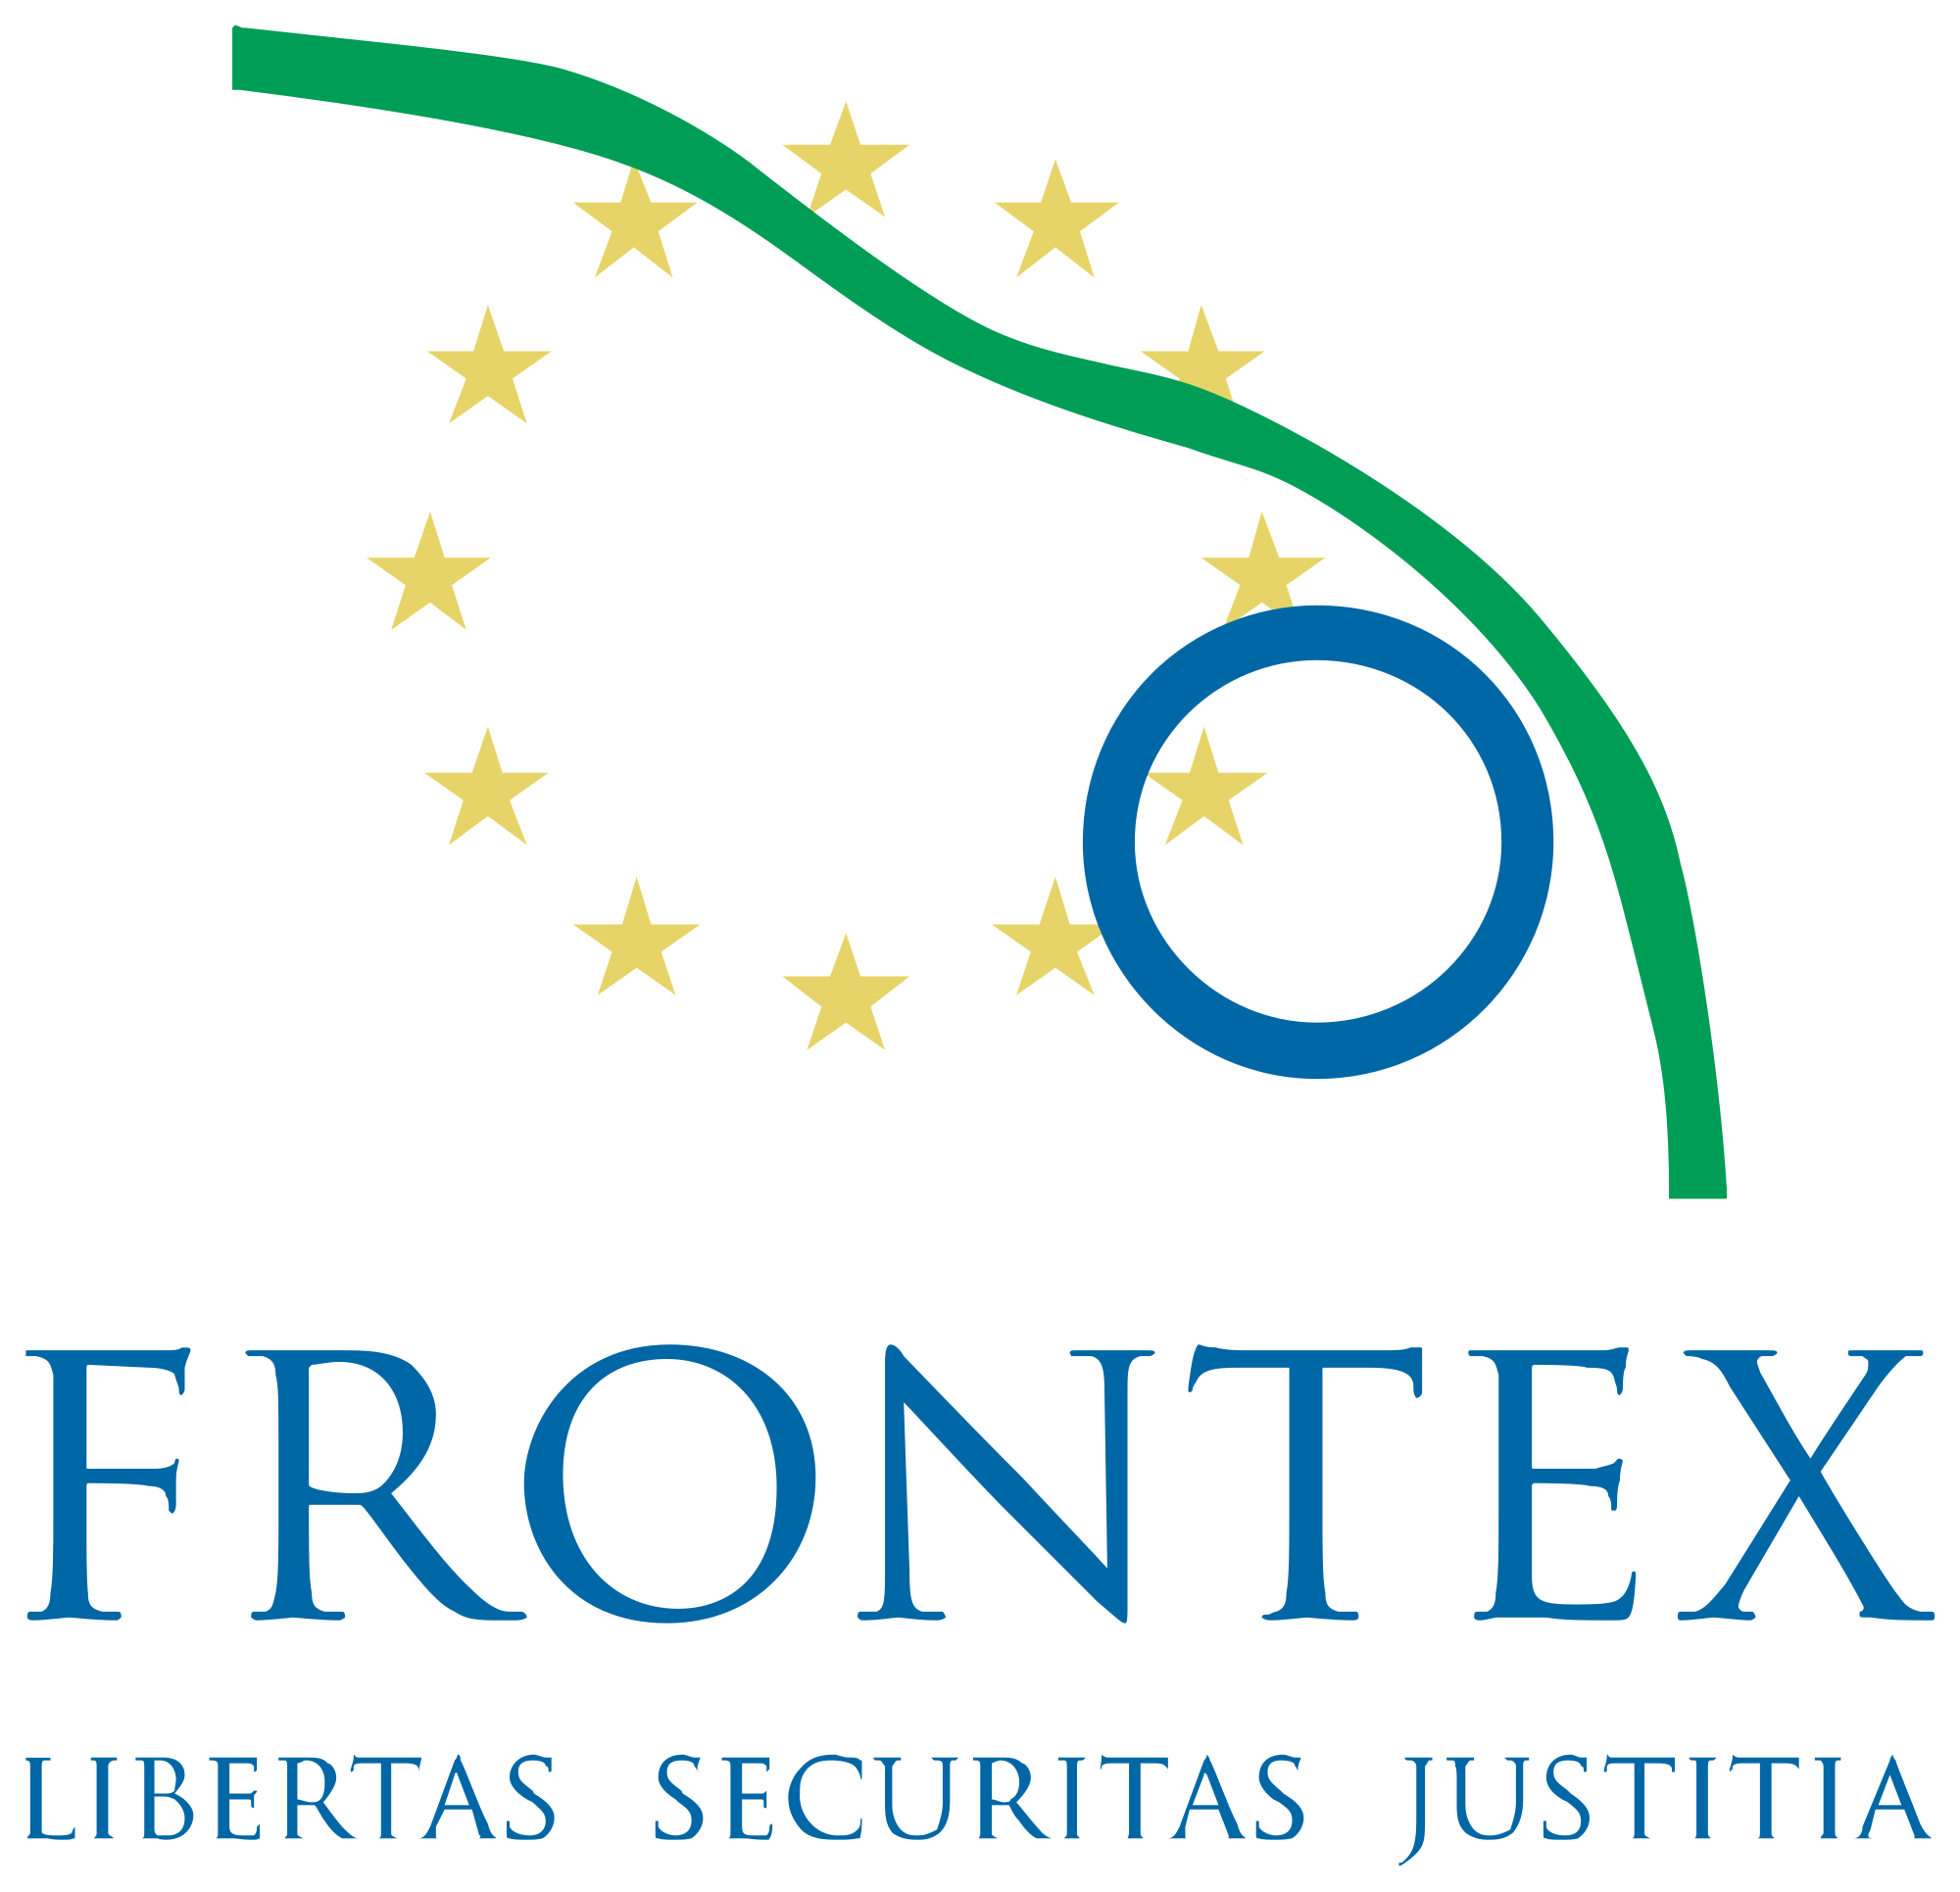 Frontex